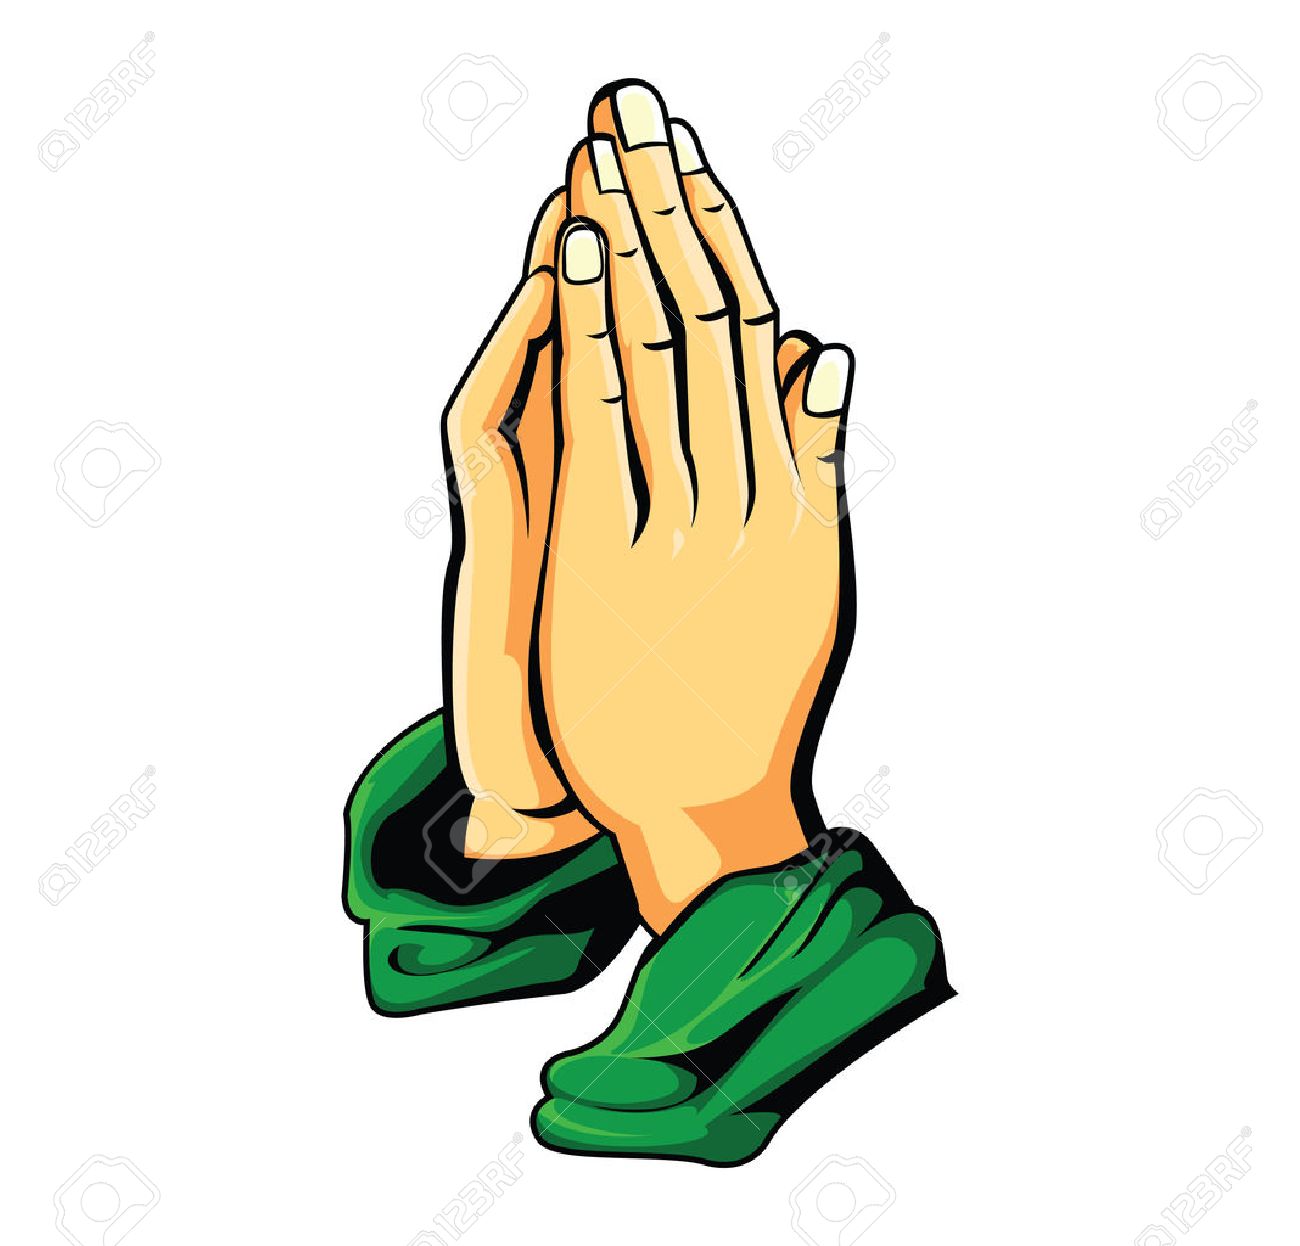 Praying Hand Image